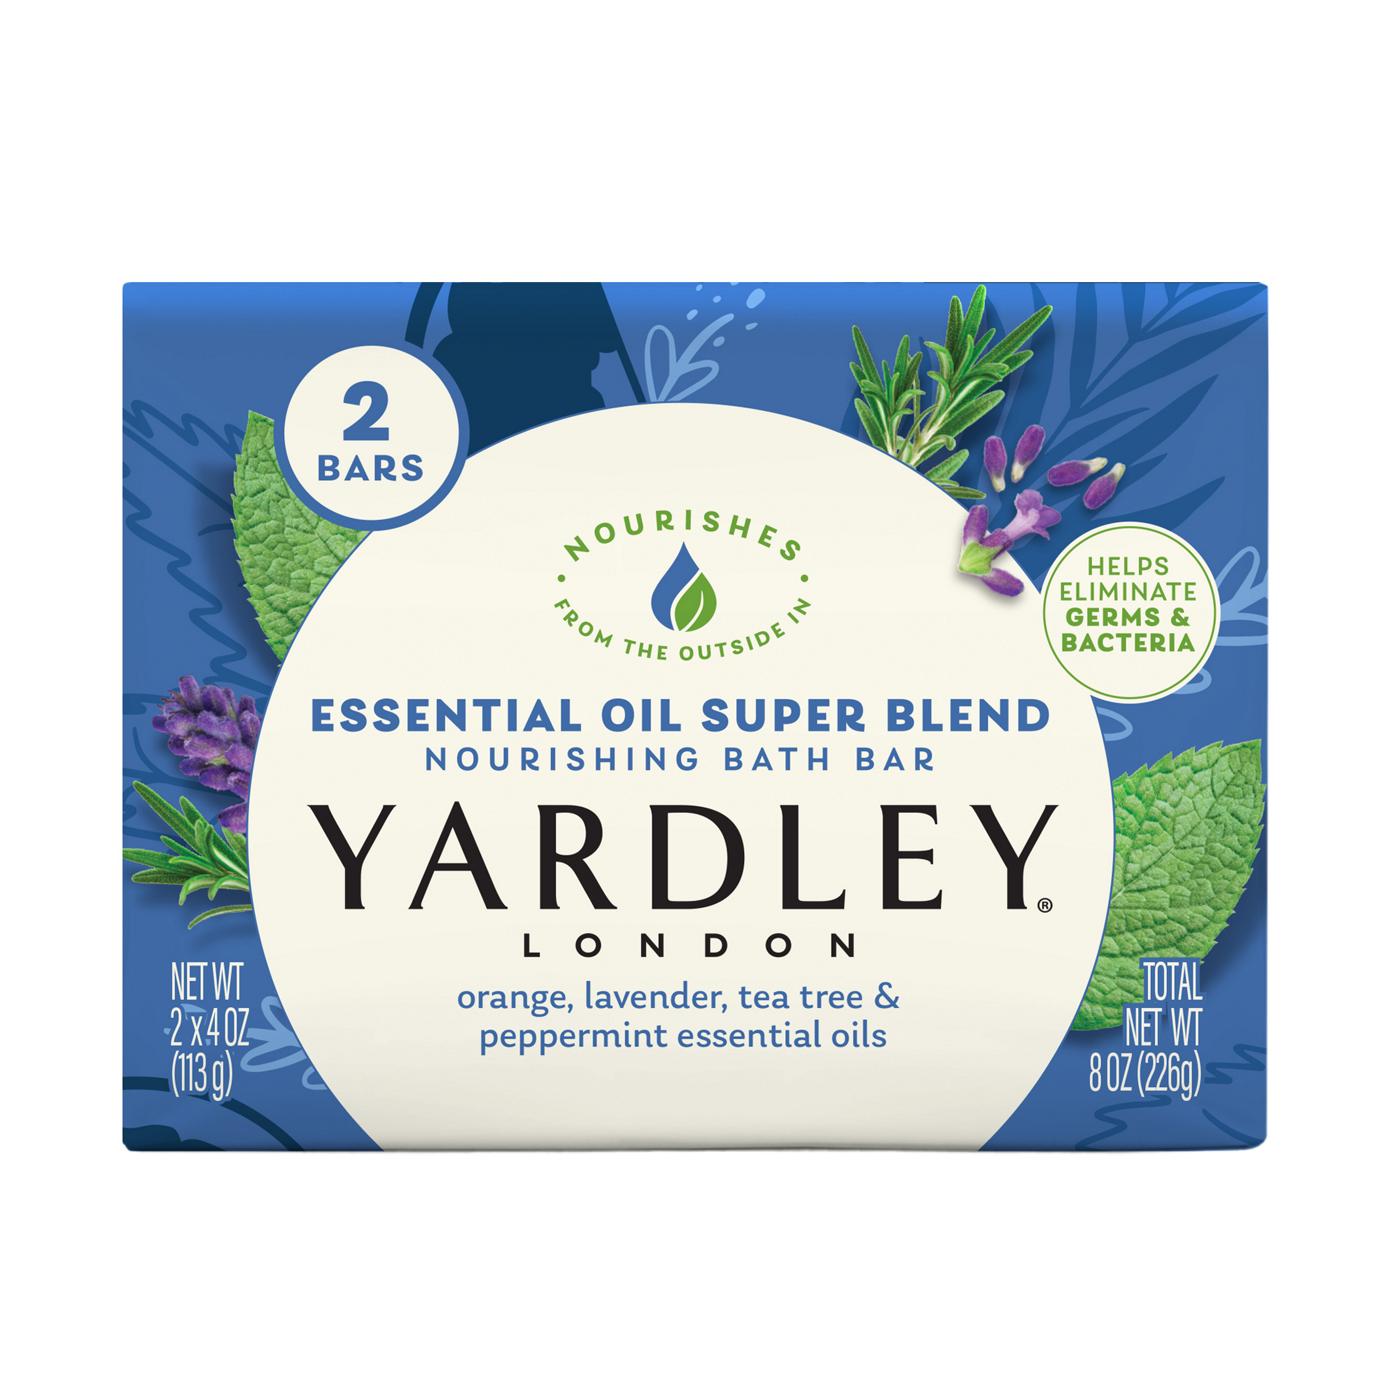 Yardley London Essential Oil Super Blend Bath Bar; image 1 of 8